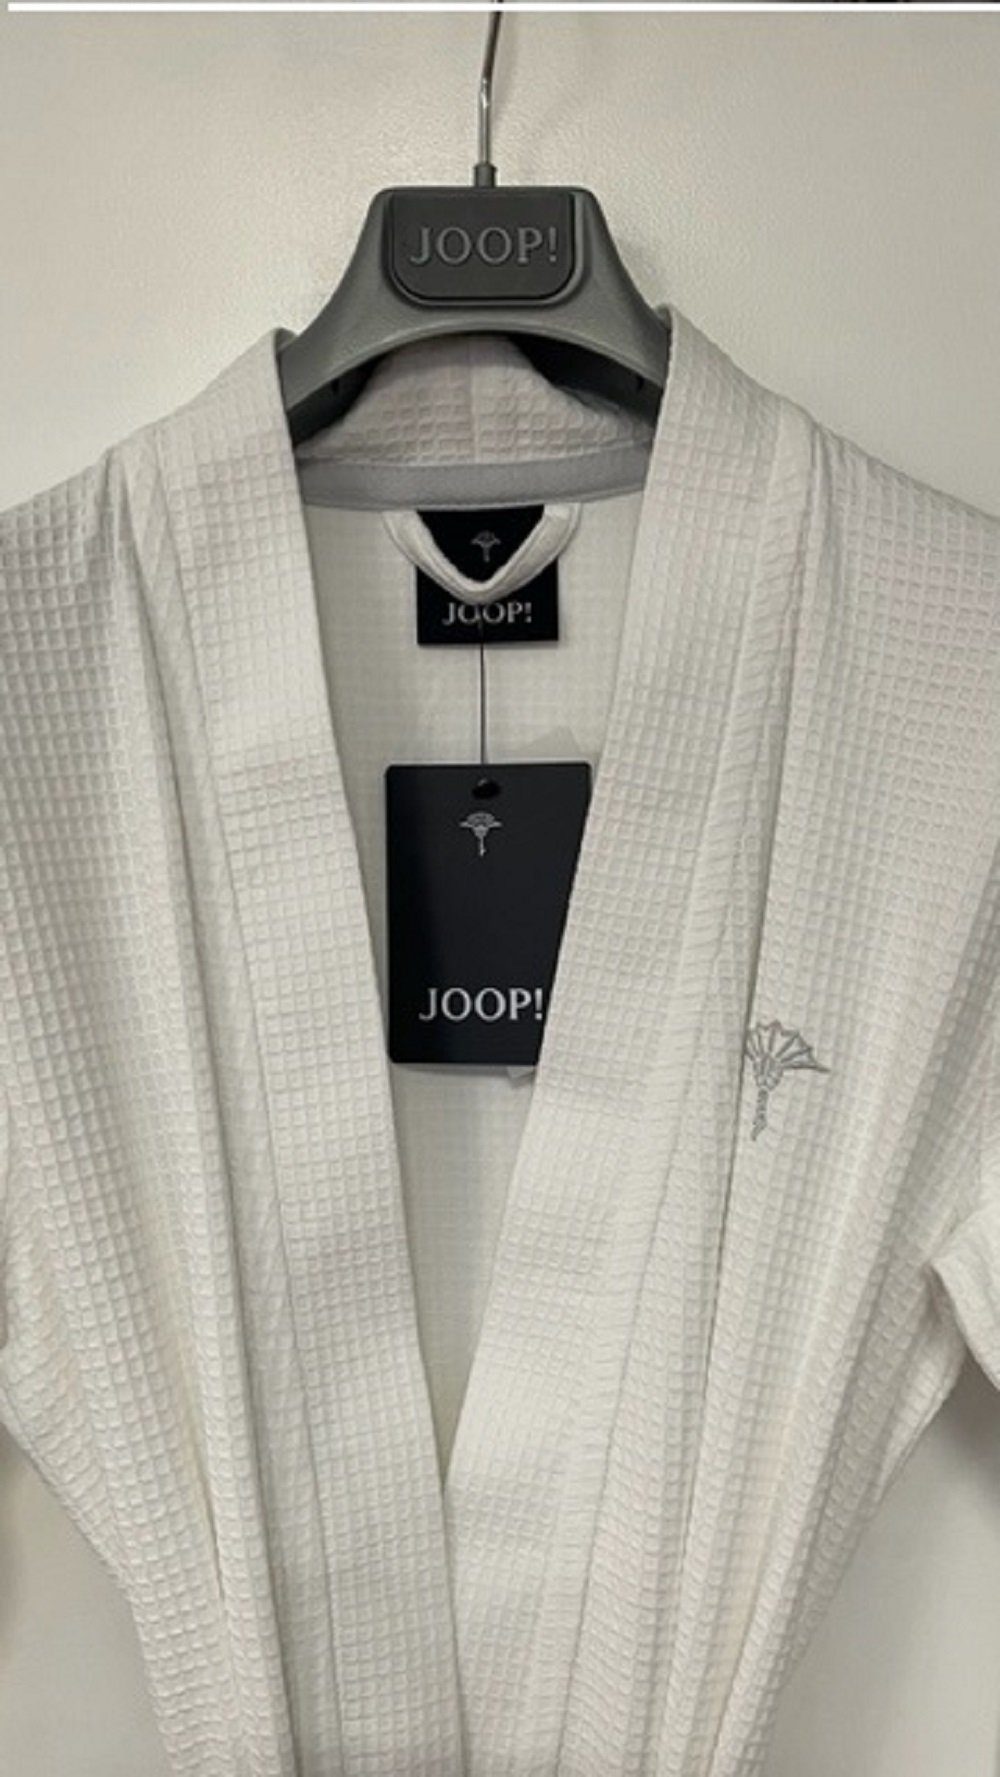 Damen gesticktem Piqué, Kimono-Kragen, leichter Kimono Joop! Kimono mit Uni JOOP! Logo 1657 weiss Gürtel, Kimono Bademantel